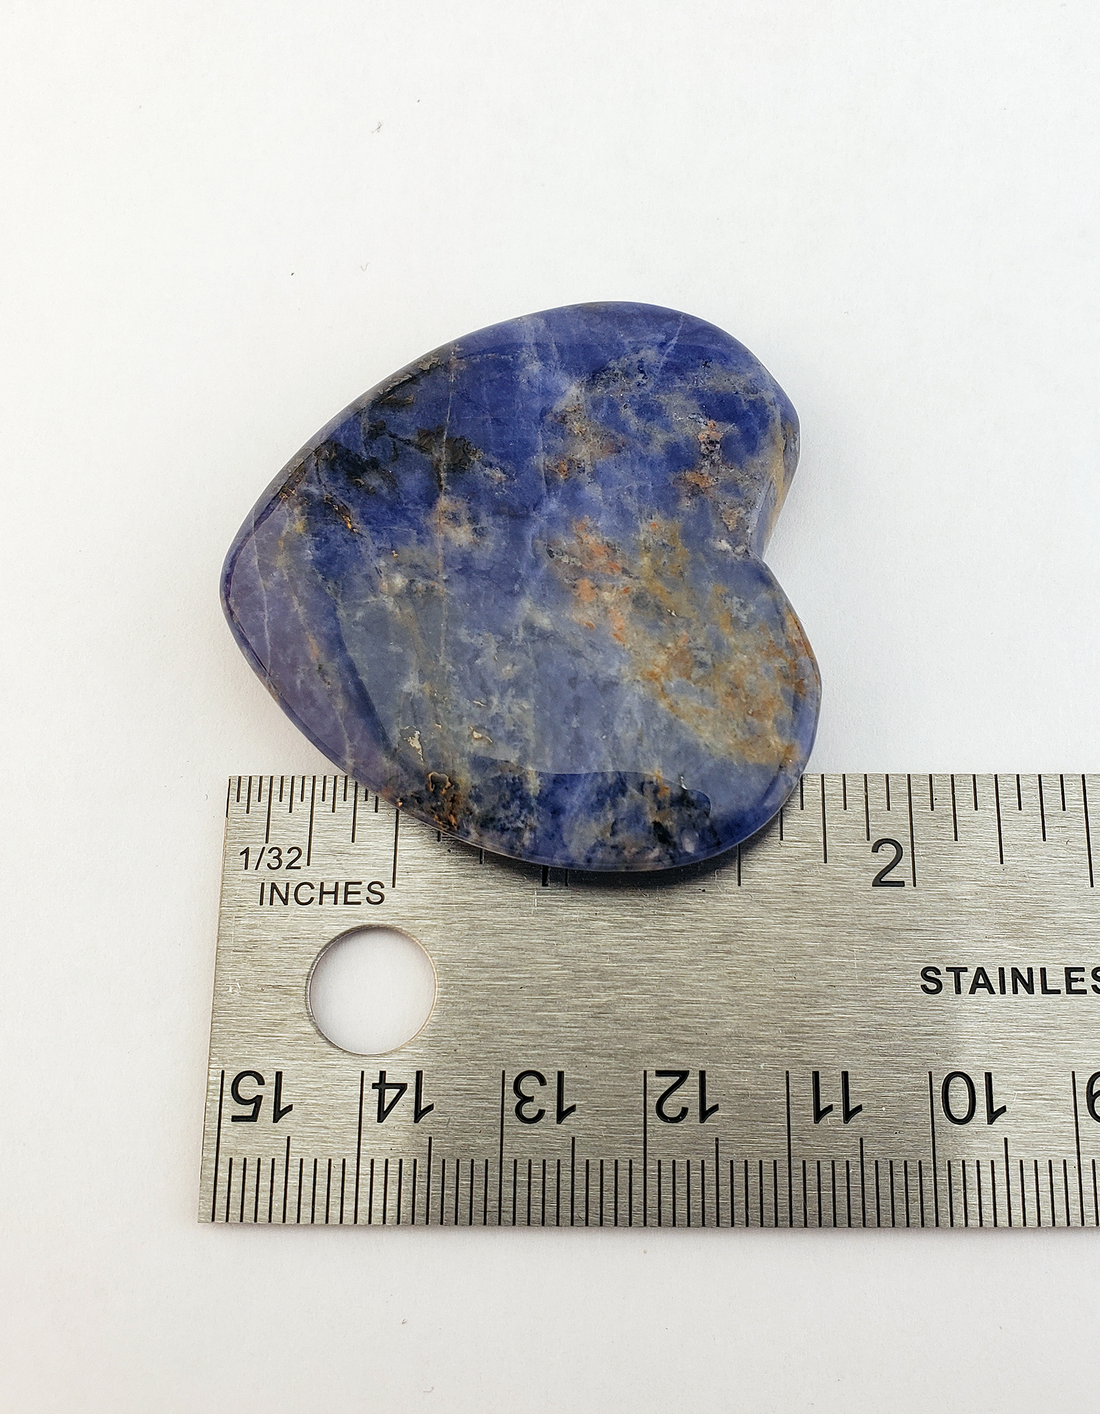 Sodalite Polished Gemstone Flat Heart Shaped Carving - 45mm - Sizing 2